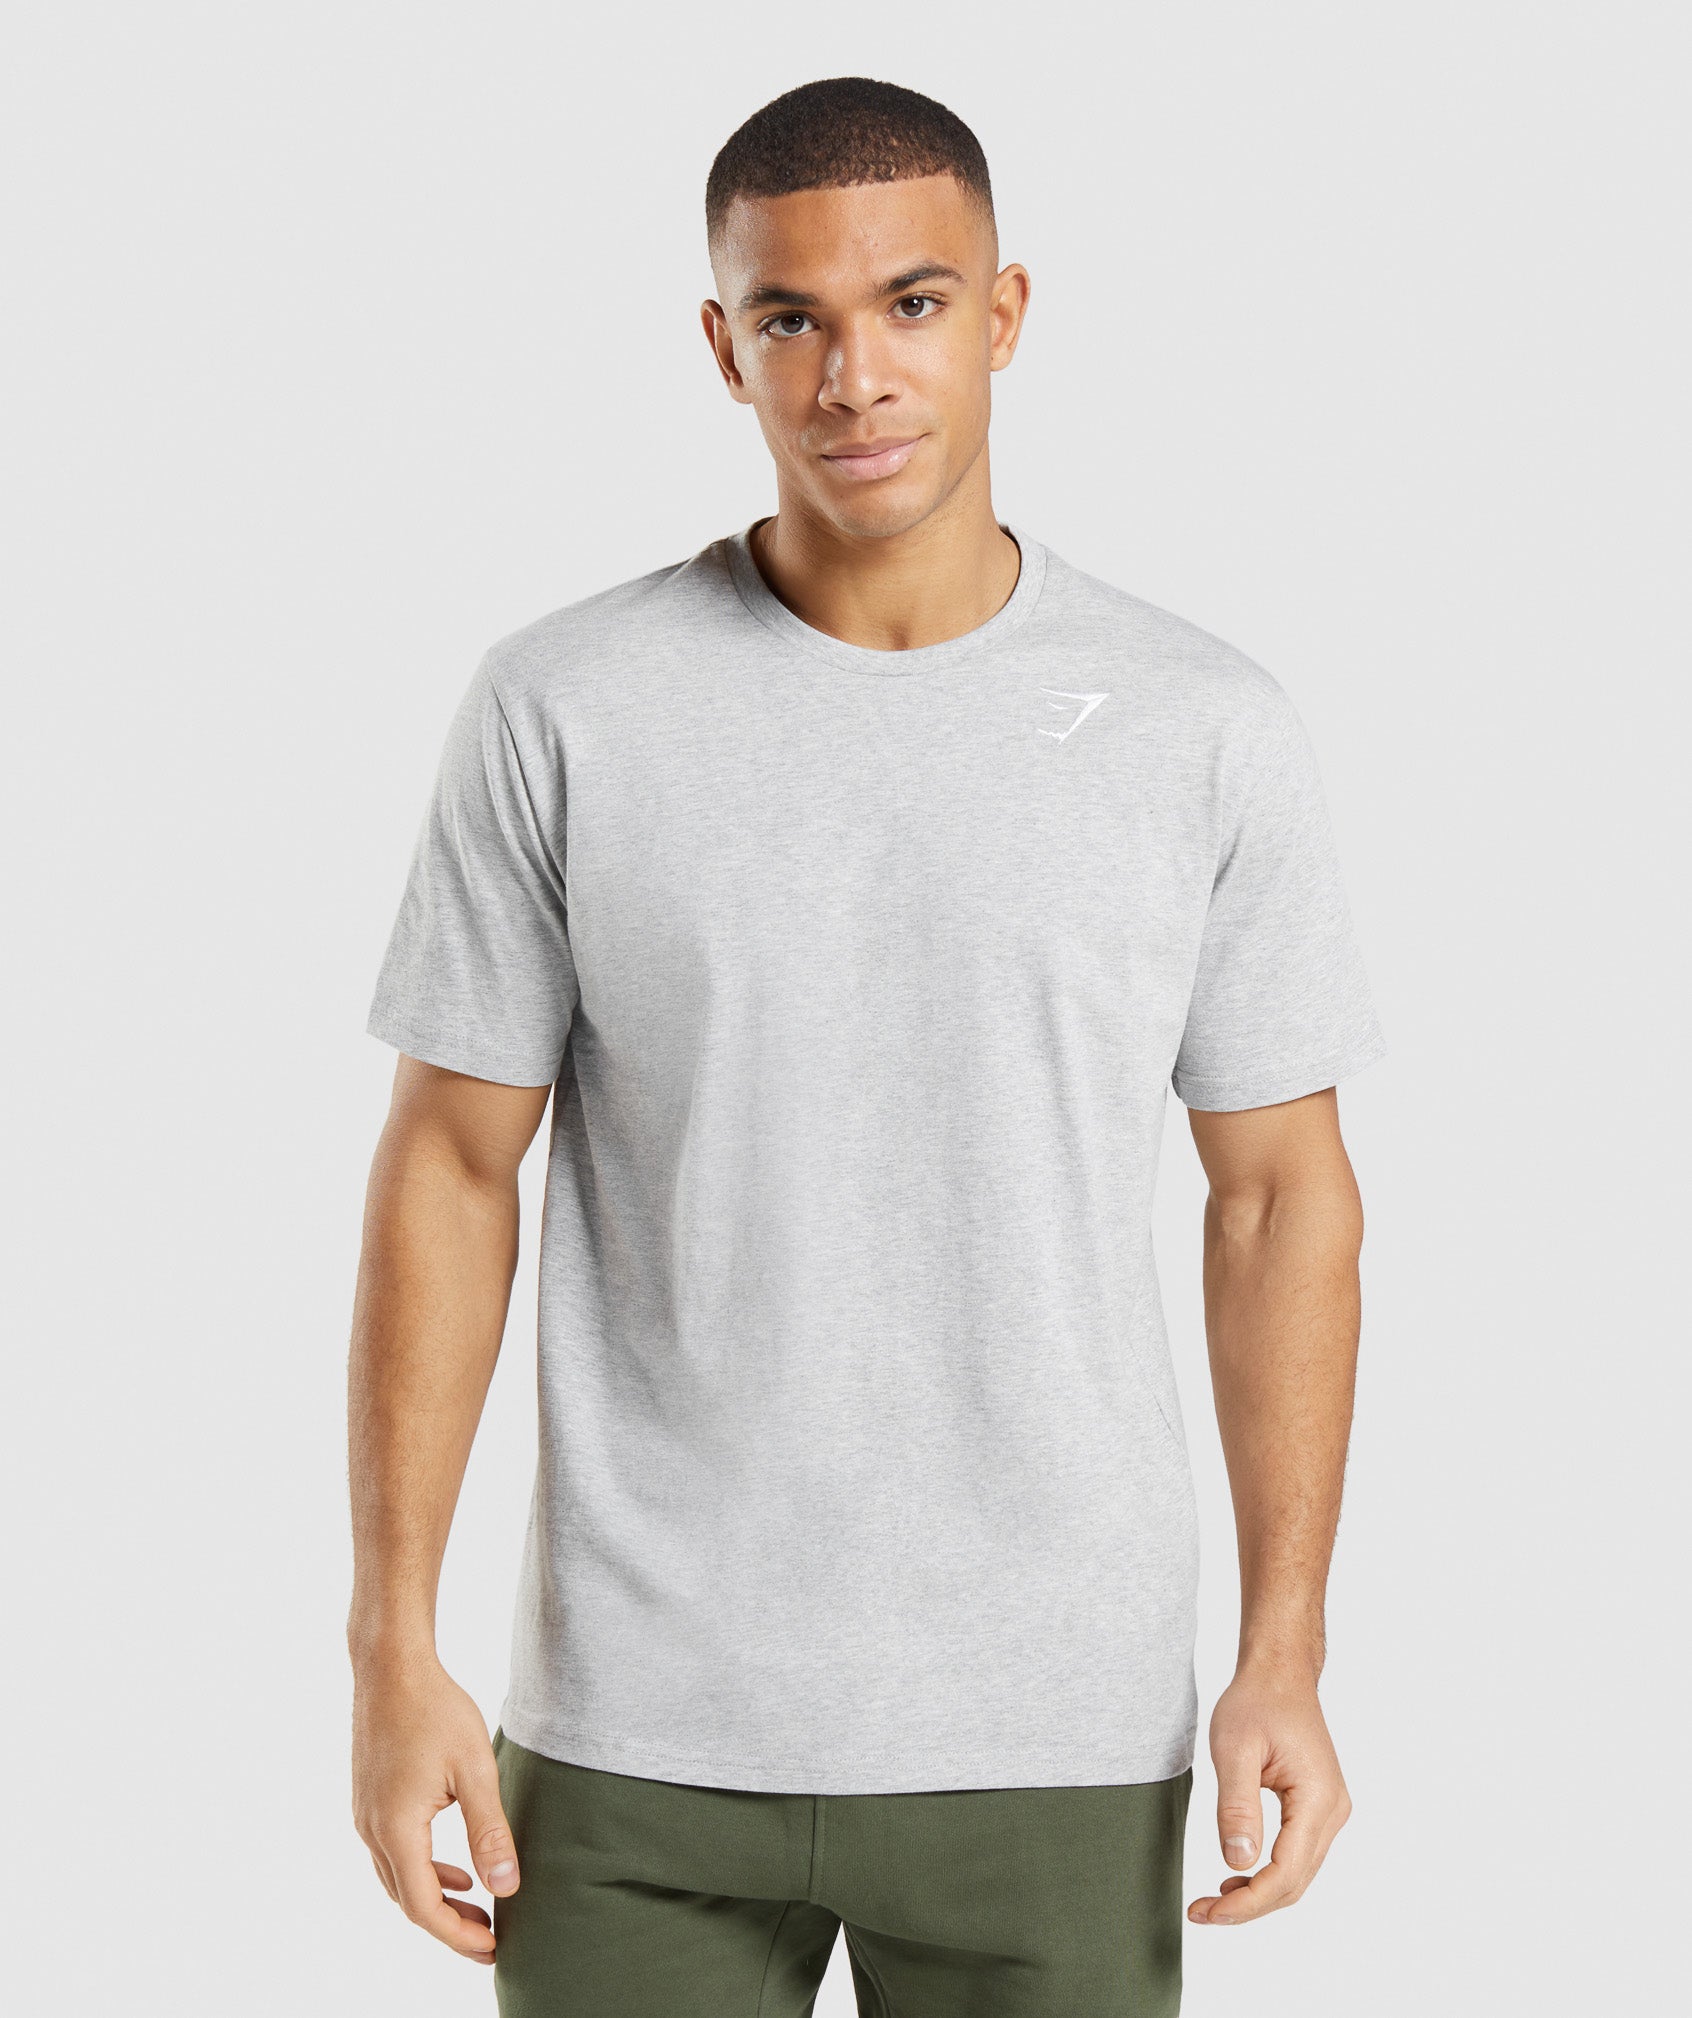 Round-necked T-shirt - Light grey marl - Men